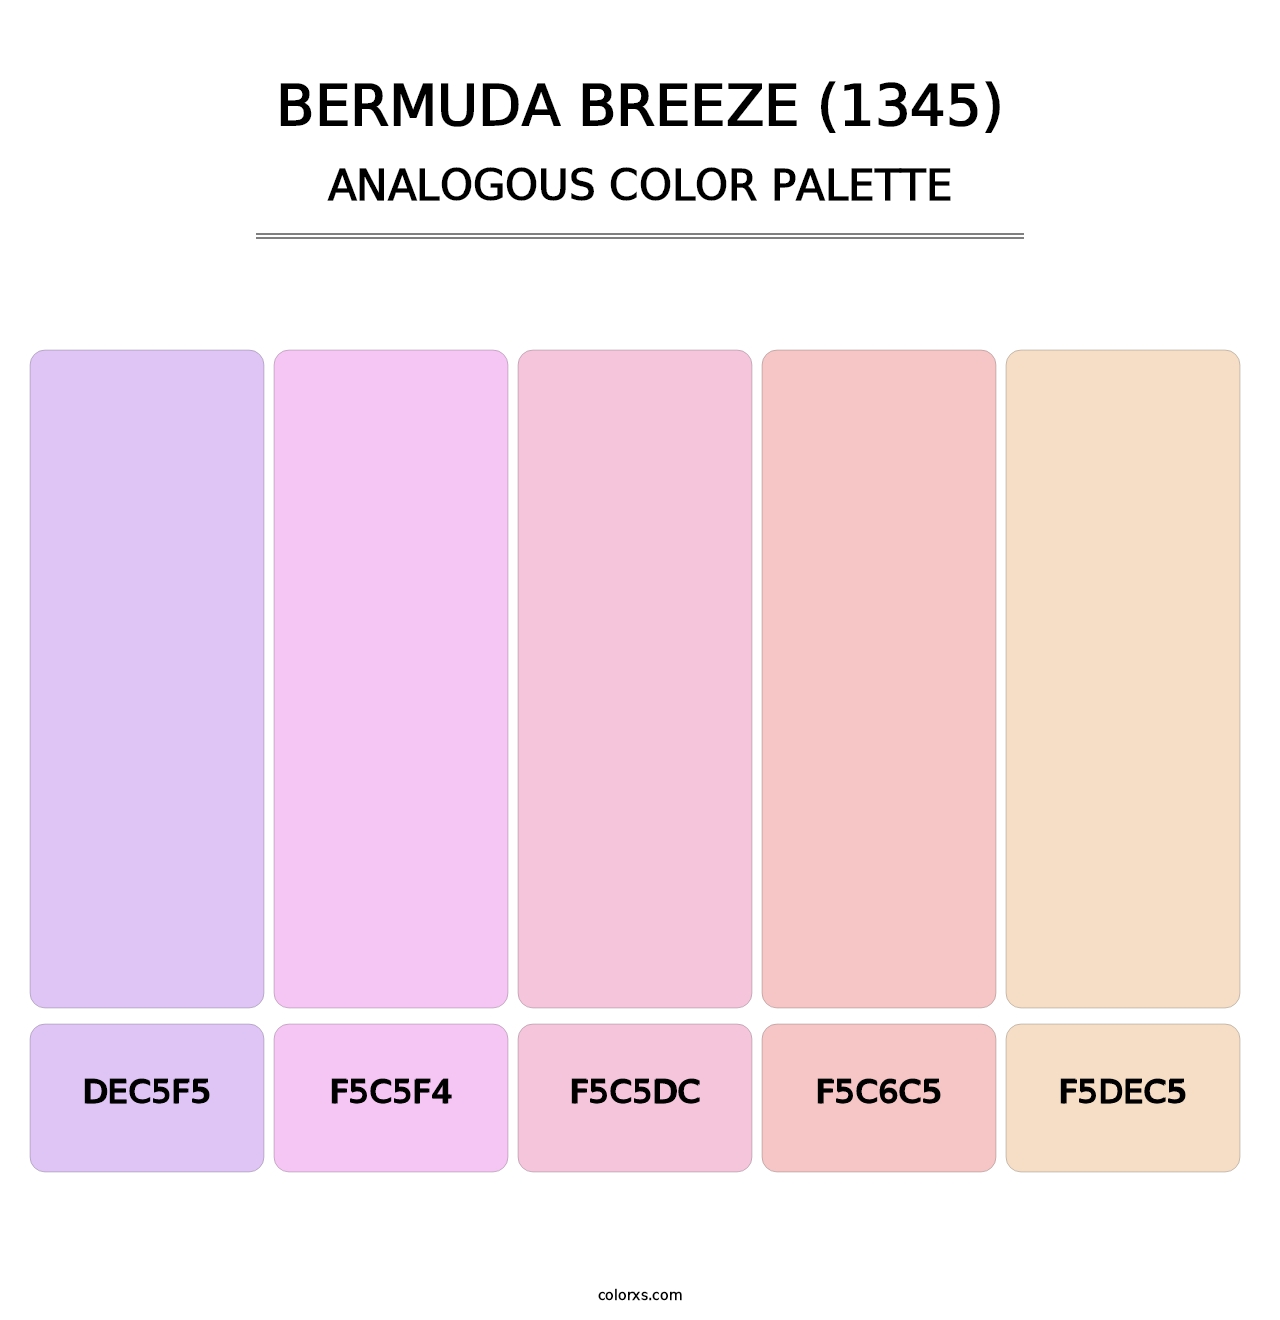 Bermuda Breeze (1345) - Analogous Color Palette